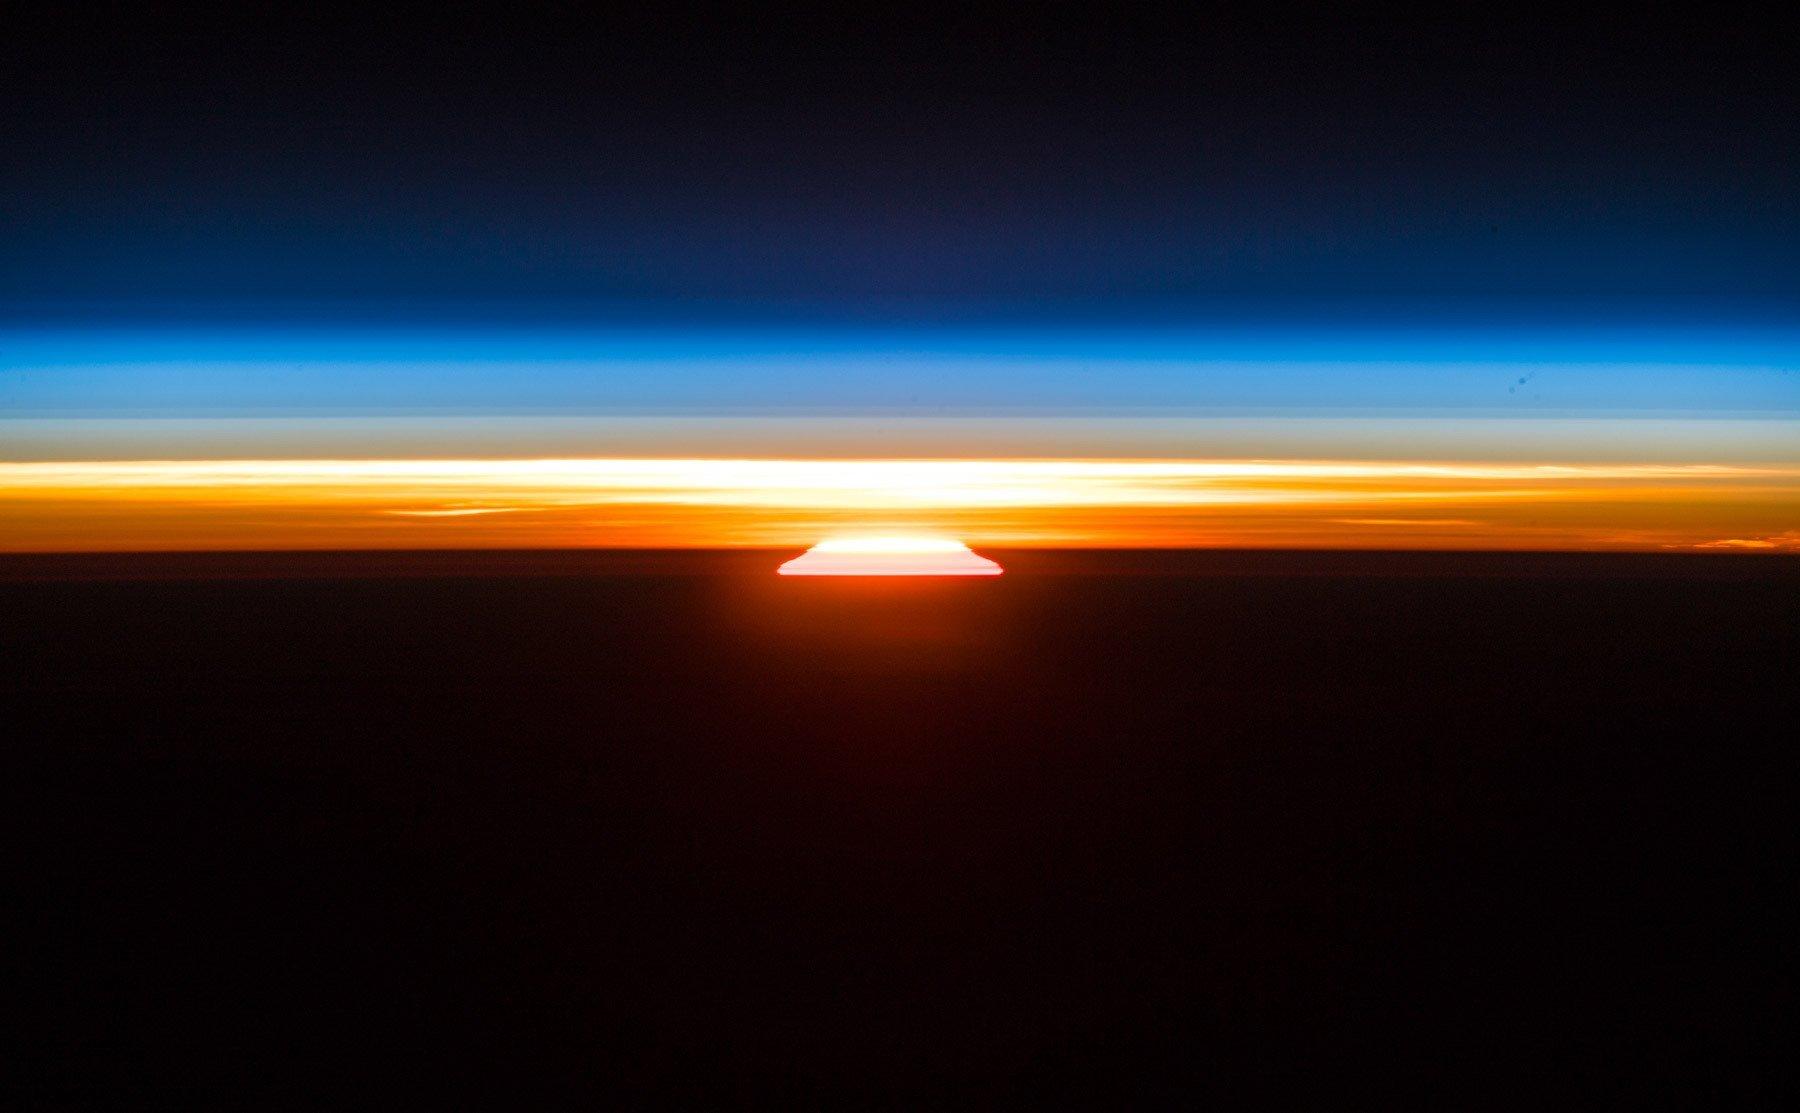 Ein Sonnenaufgang, vom Erdorbit aus vom deutschen Raumfahrer Alexander Gerst fotografiert. Über der aufgehenden Sonne die dünne, orange-blaue Erdatmosphäre, darüber die Schwärze des Weltalls.